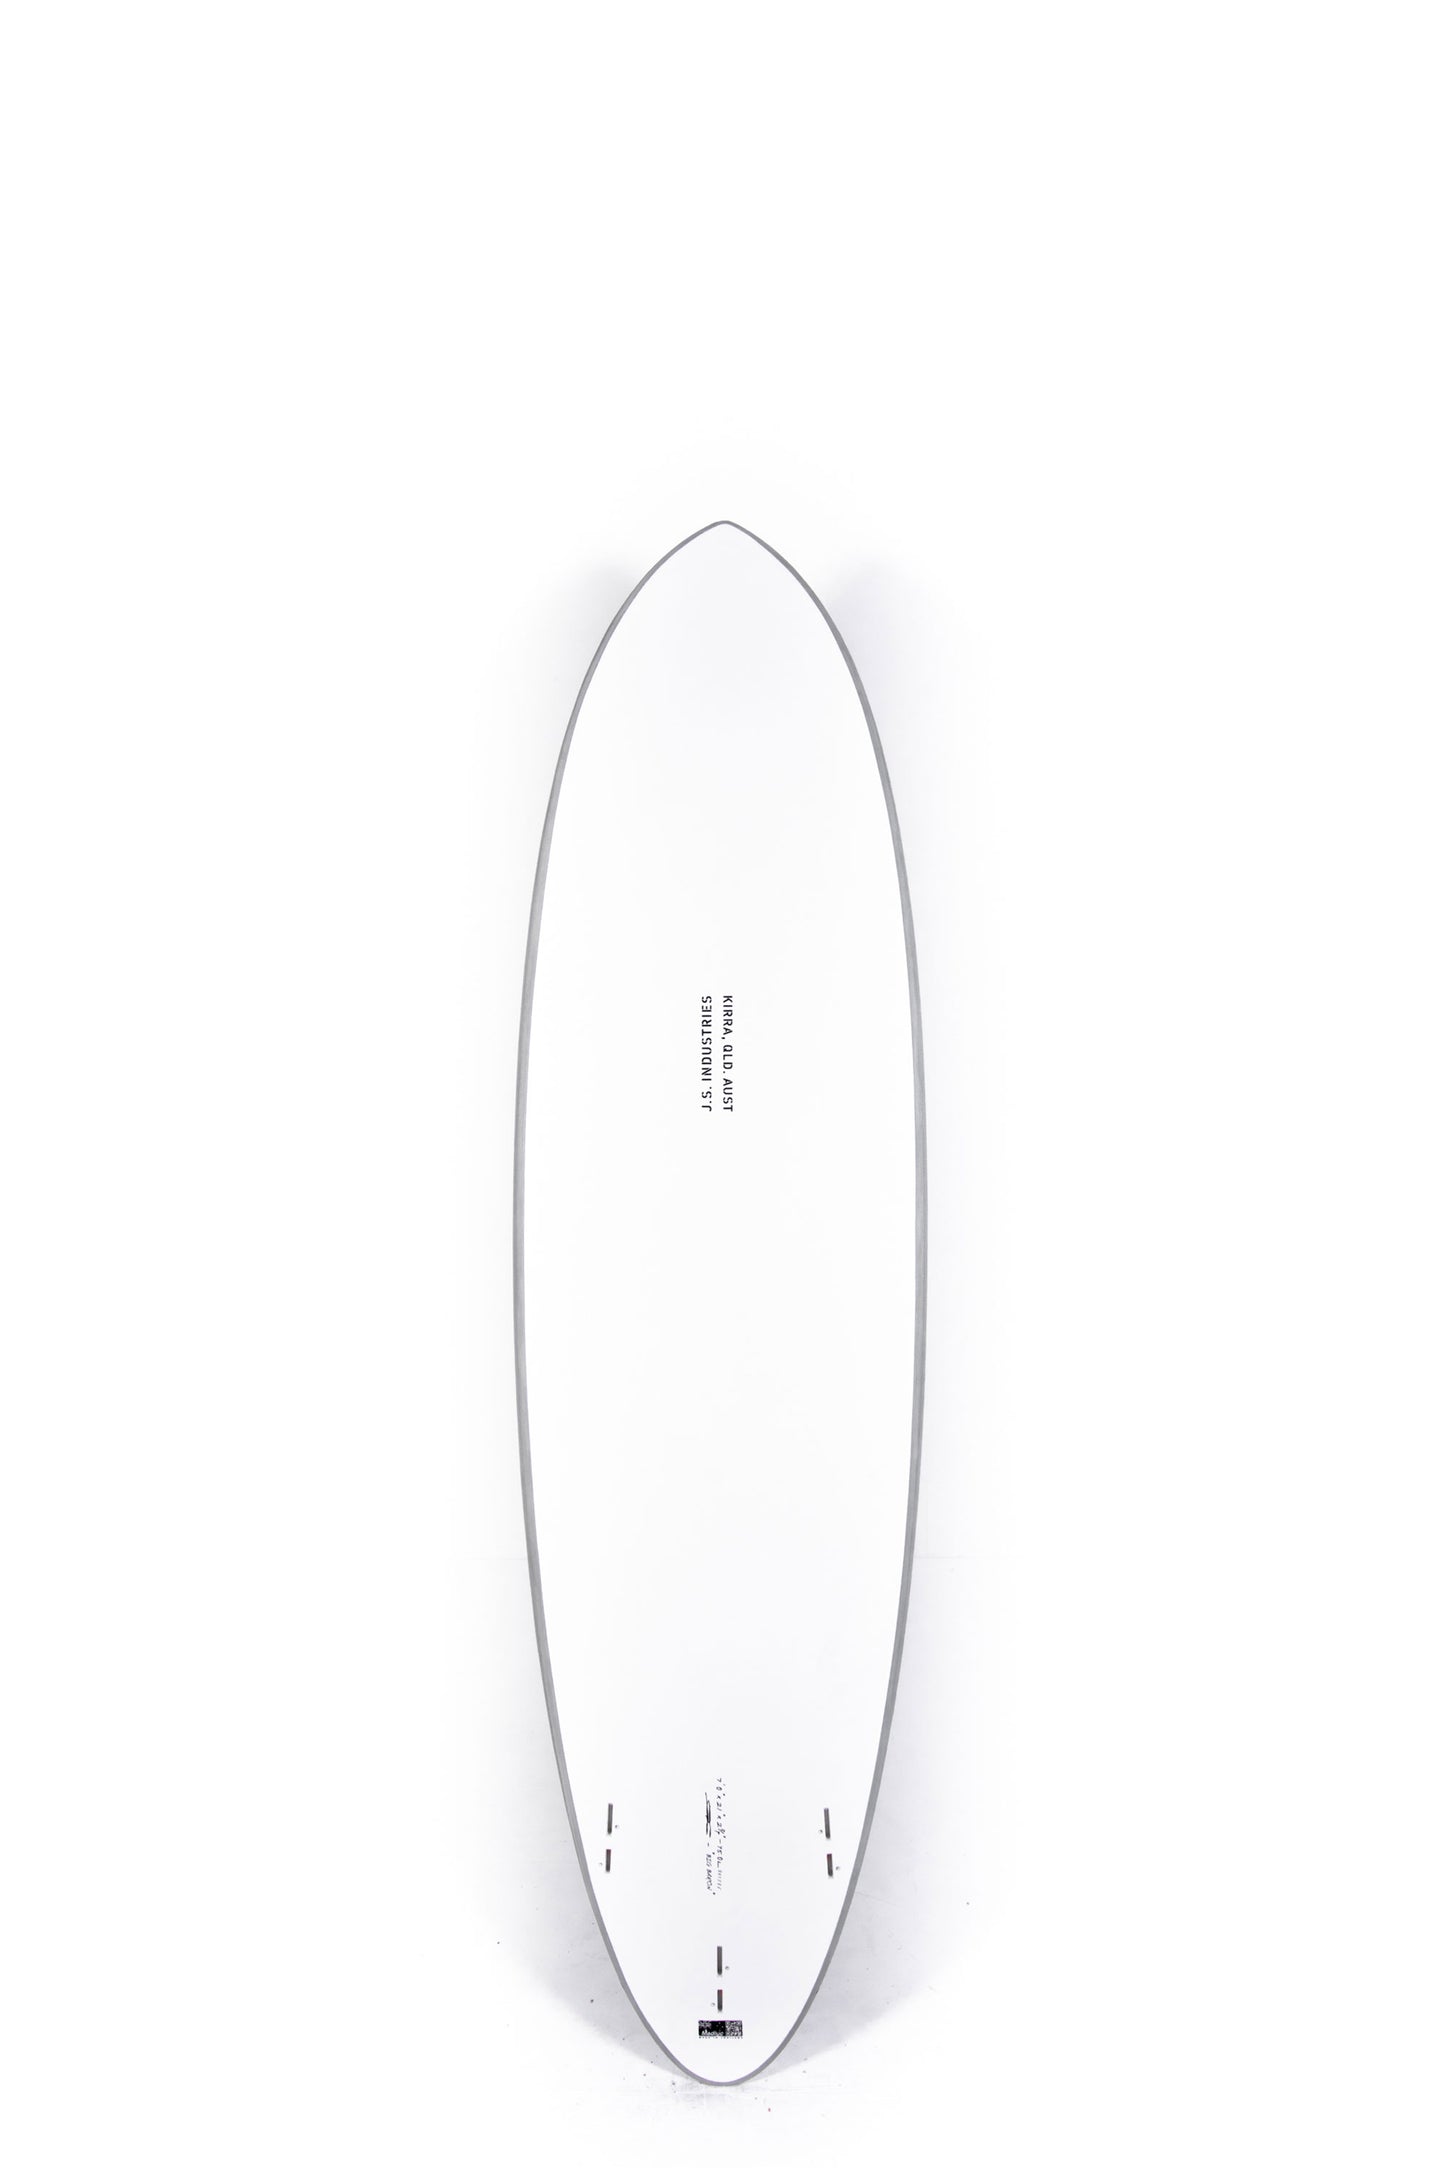 
                  
                    Pukas Surf Shop - JS Surfboards - BIG BARON SOFT - 7'0" x 21 x  2 3/4 x 45L. - JSBBBG70
                  
                